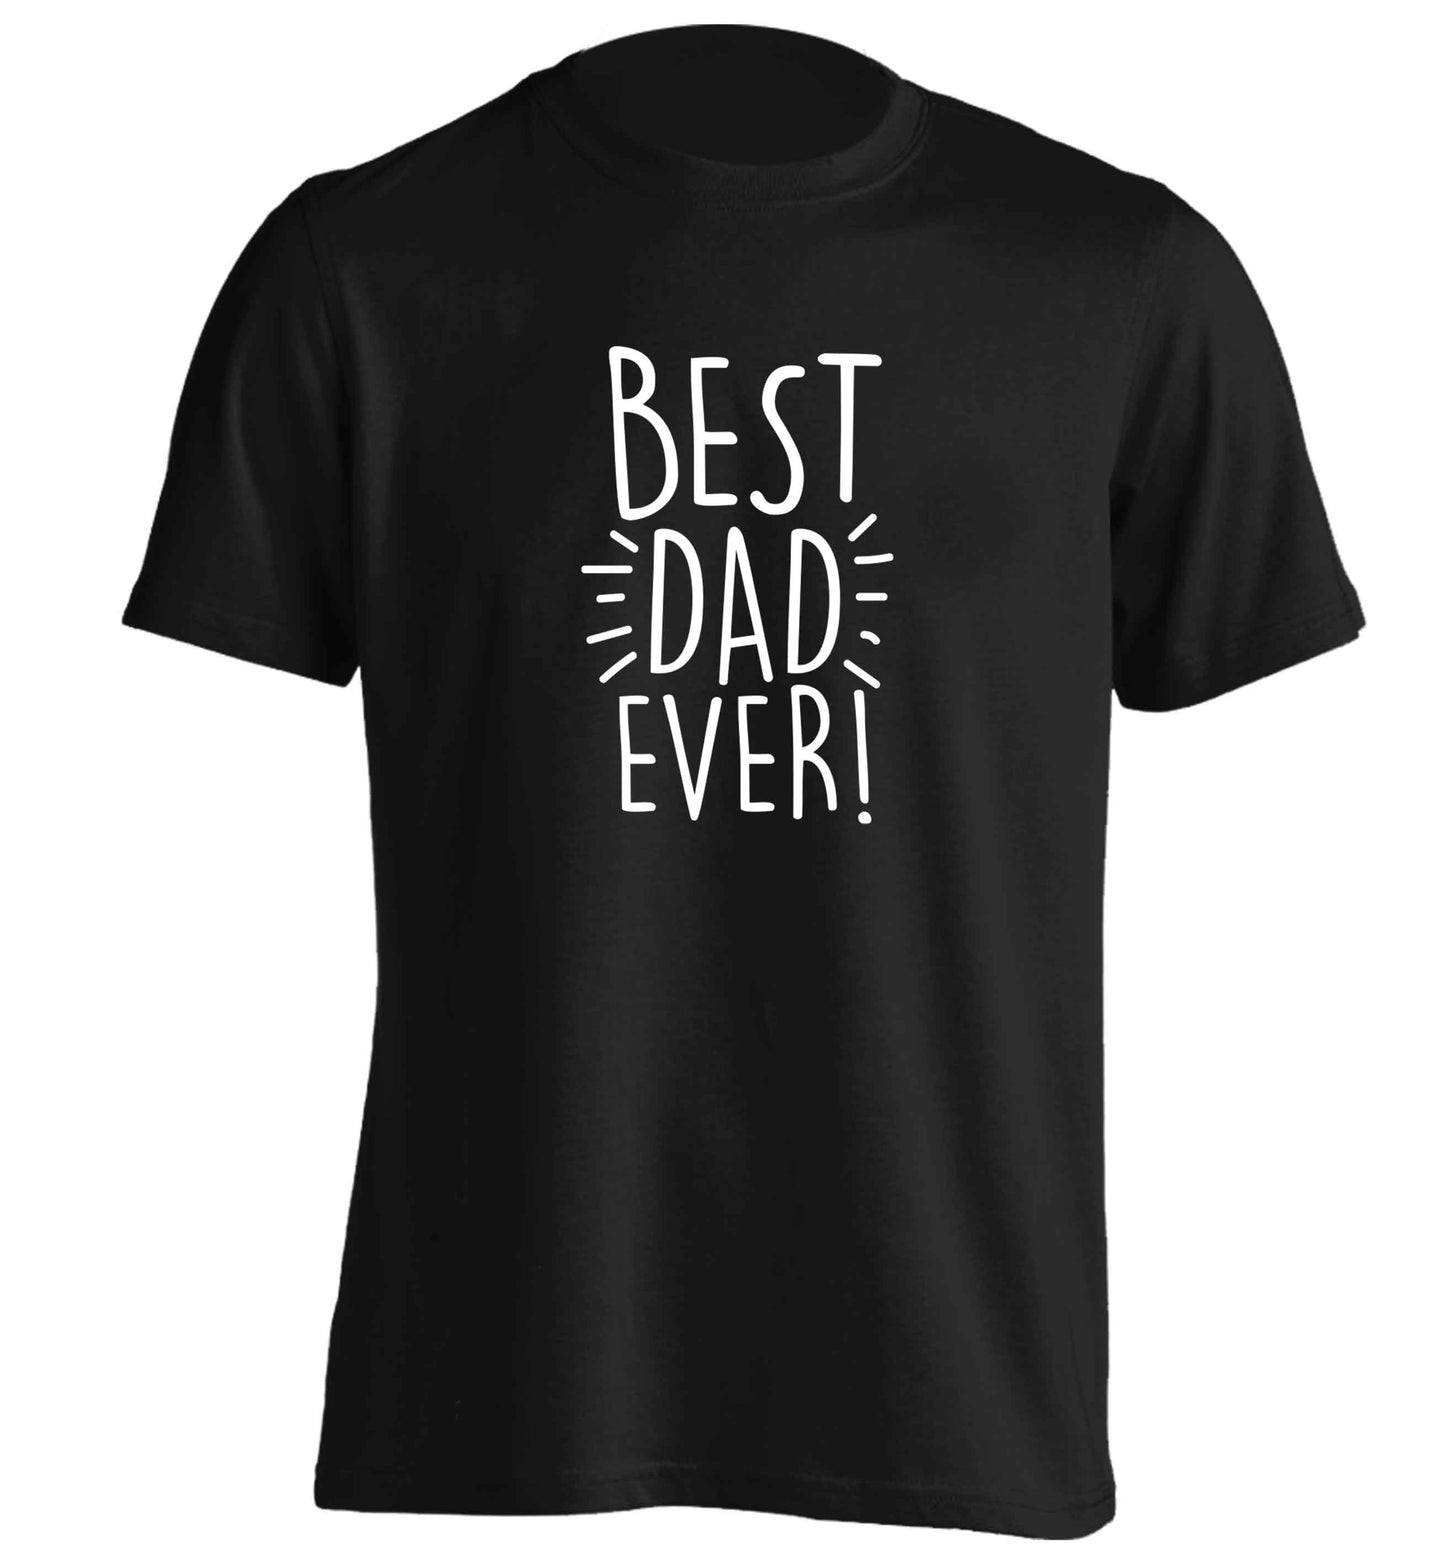 Best dad ever! adults unisex black Tshirt 2XL